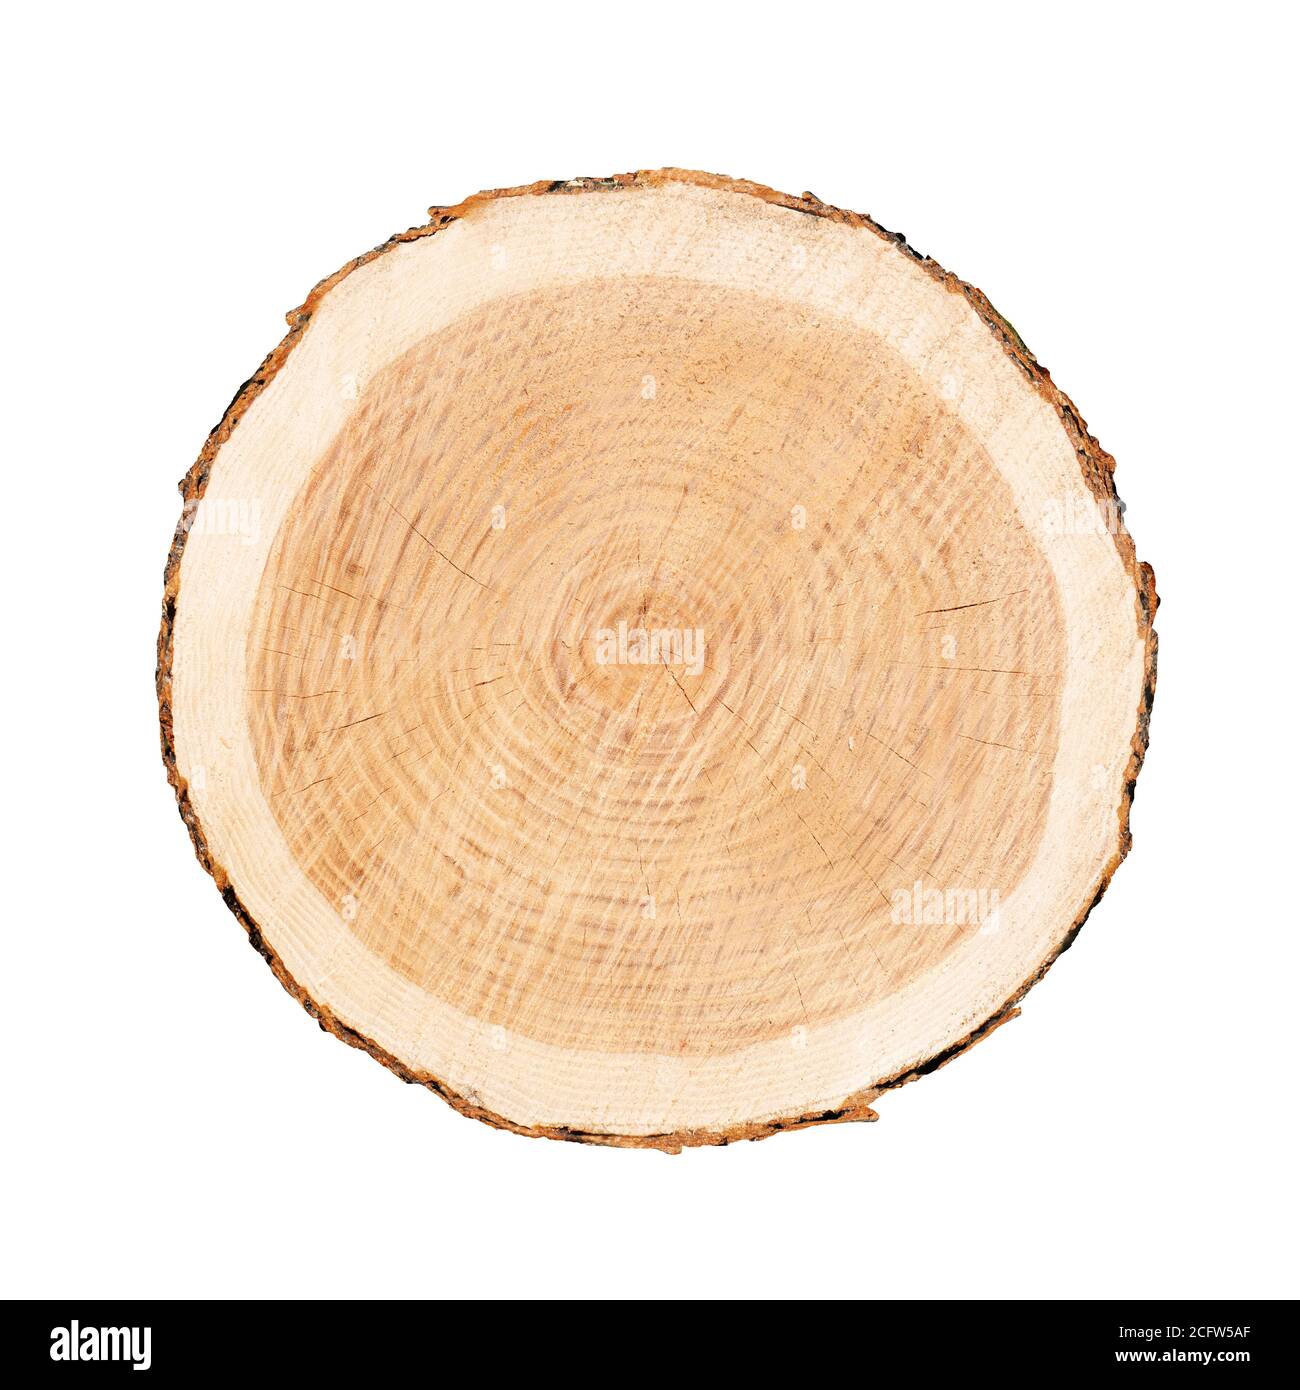 Morceau de bois abattu d'un tronc d'arbre avec des anneaux de croissance isolés sur blanc. Anneaux d'arbre avec texture et détail. Banque D'Images